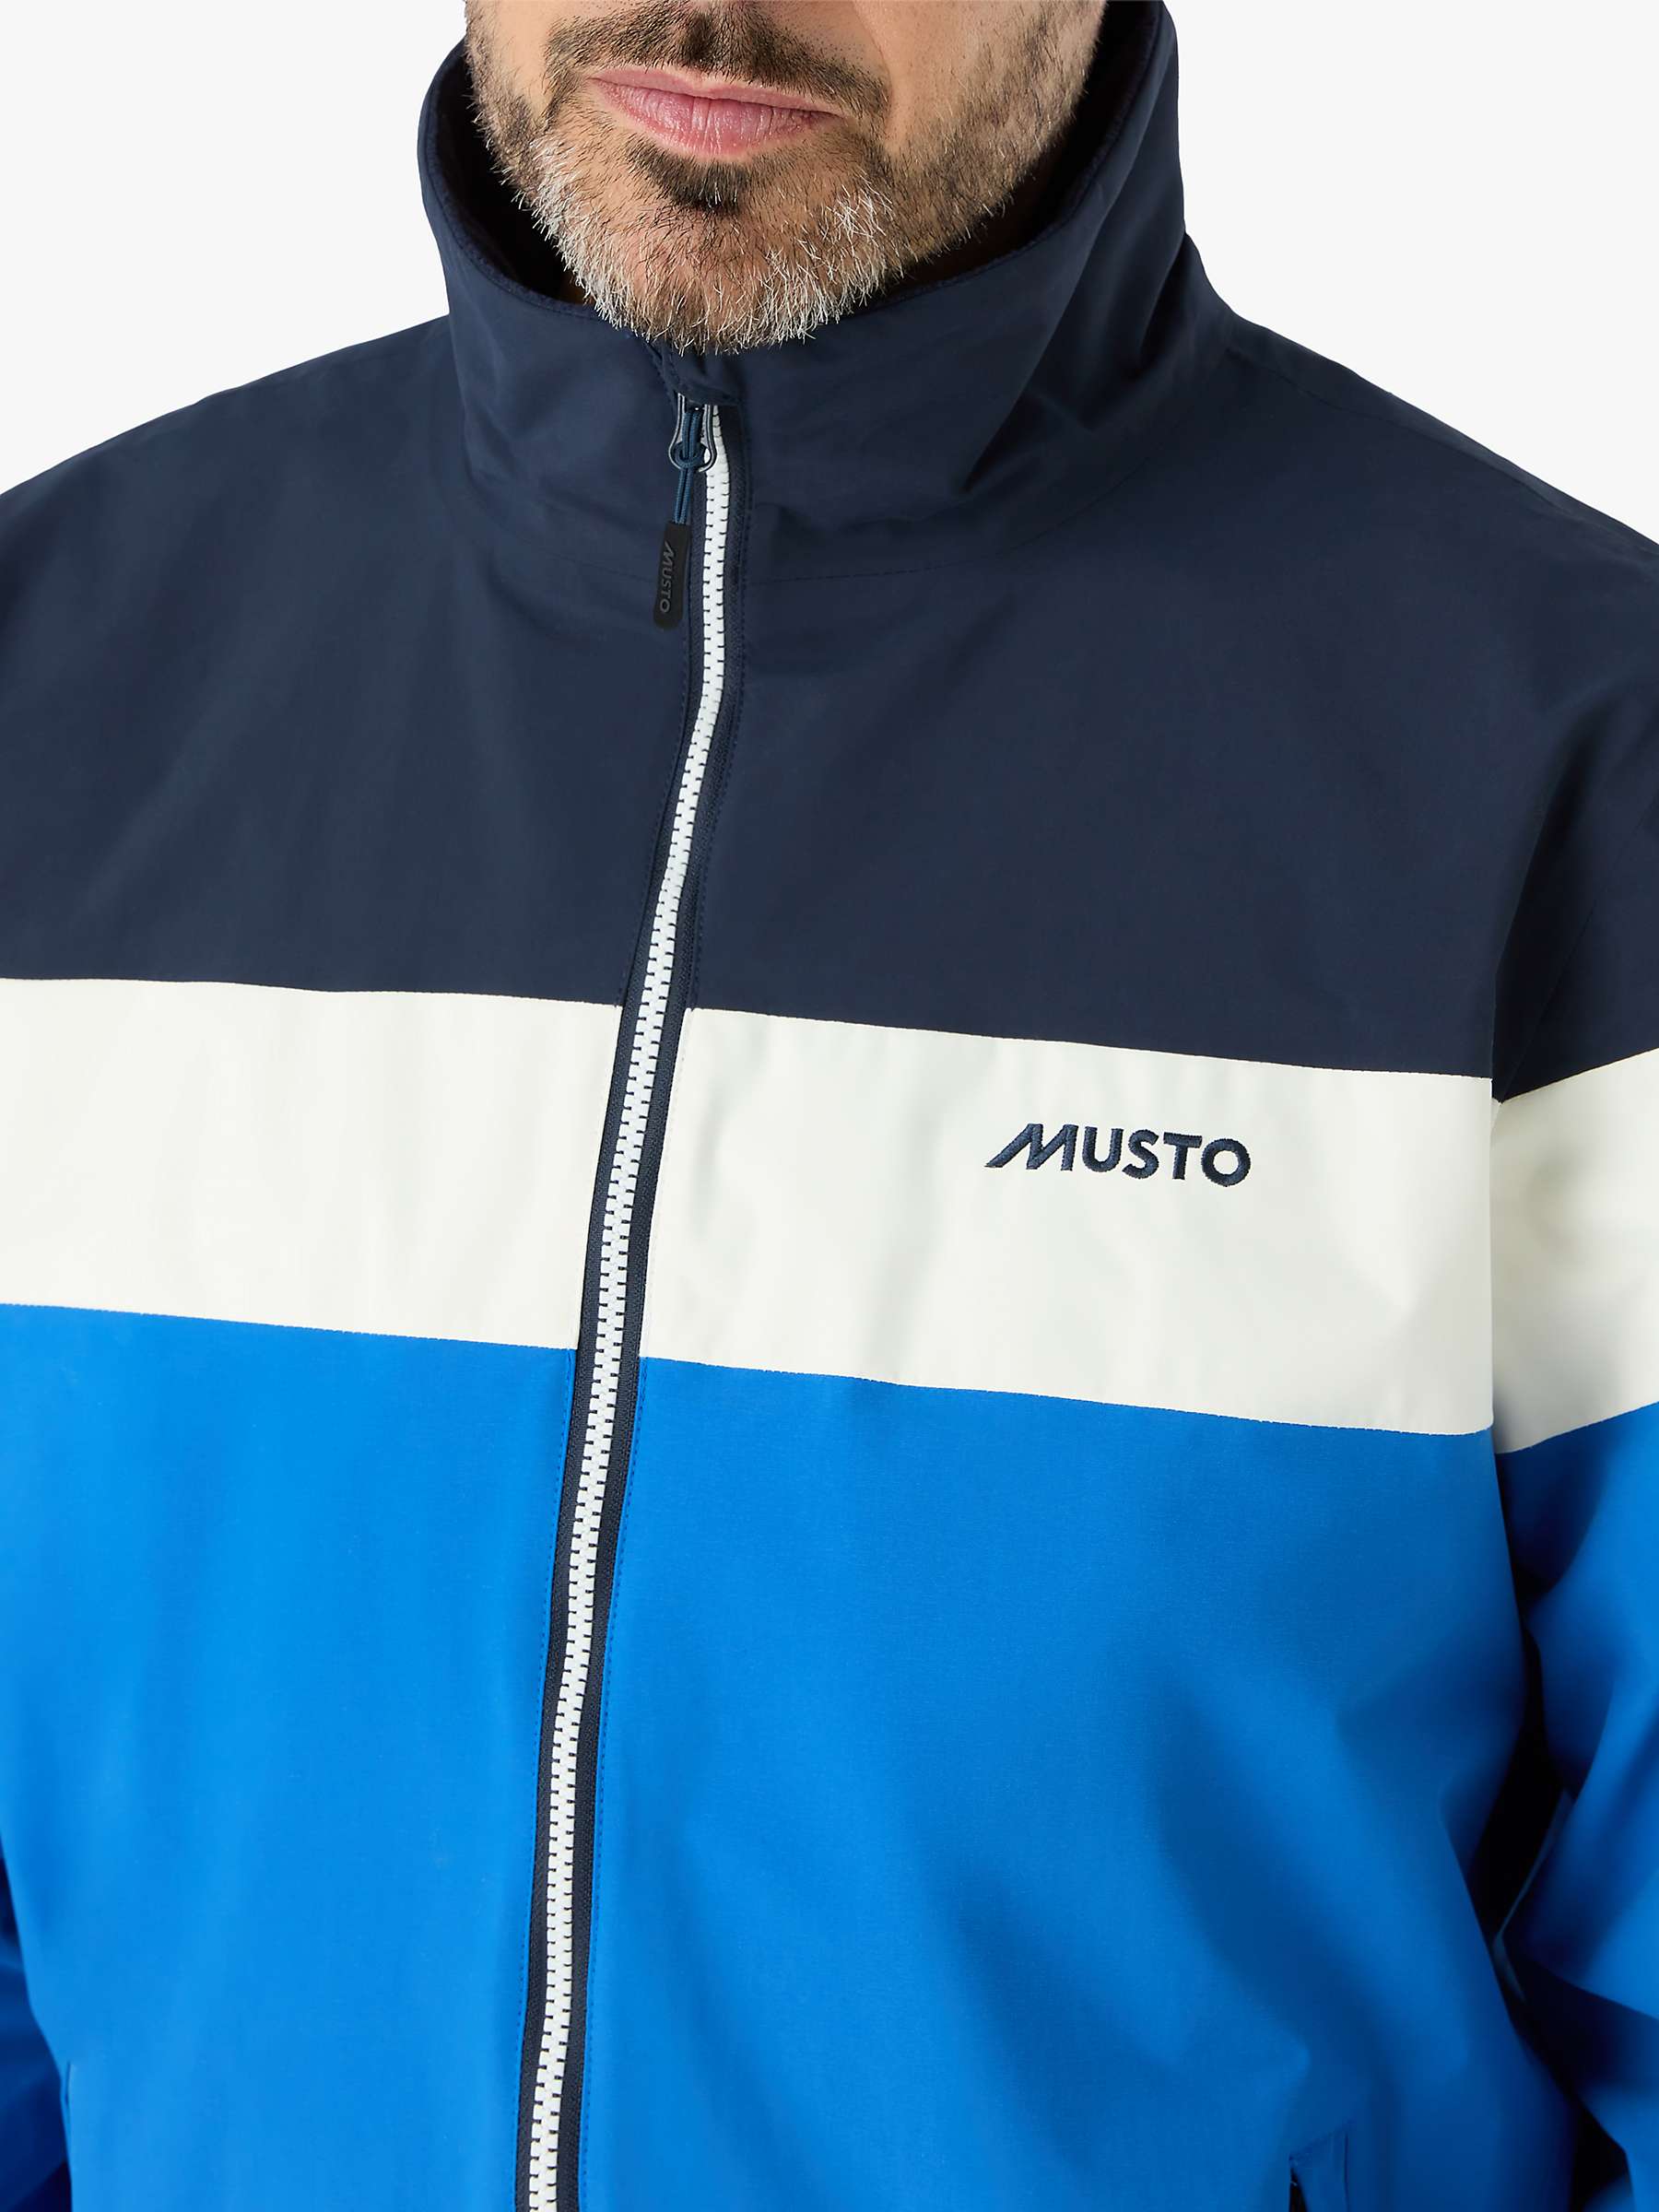 Buy Musto Polartec 64 Colour Block Full Zip Fleece, Aruba Blue/Navy Online at johnlewis.com